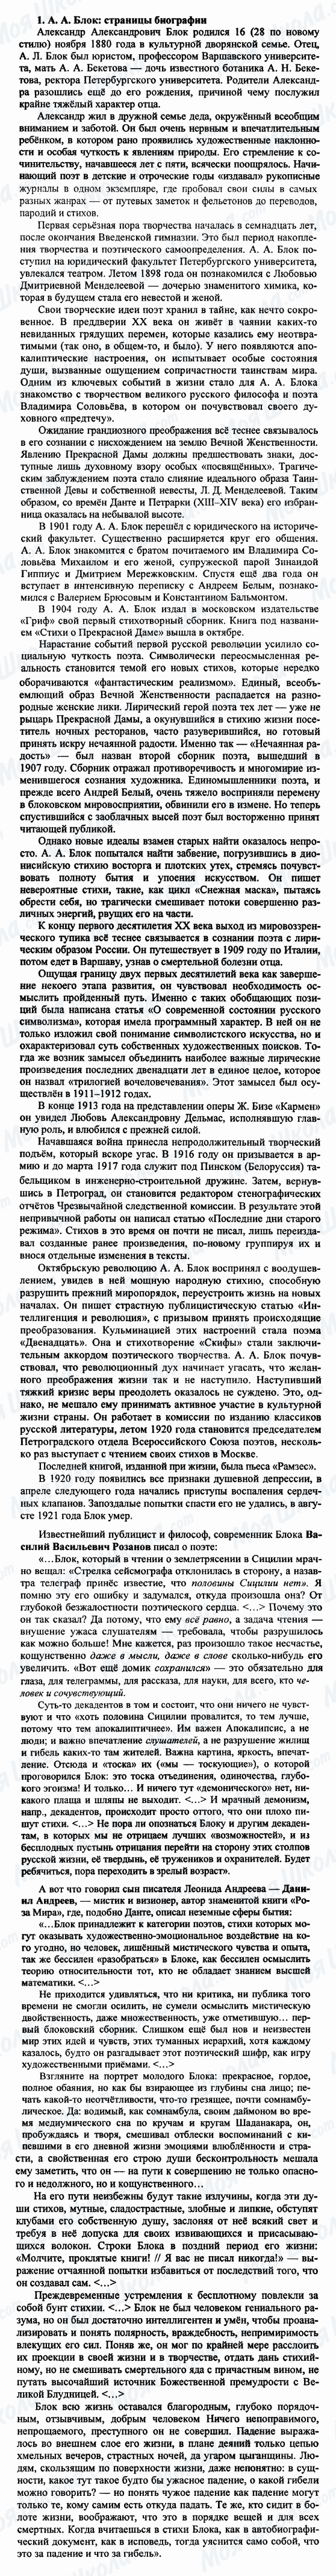 ГДЗ Російська література 9 клас сторінка 1